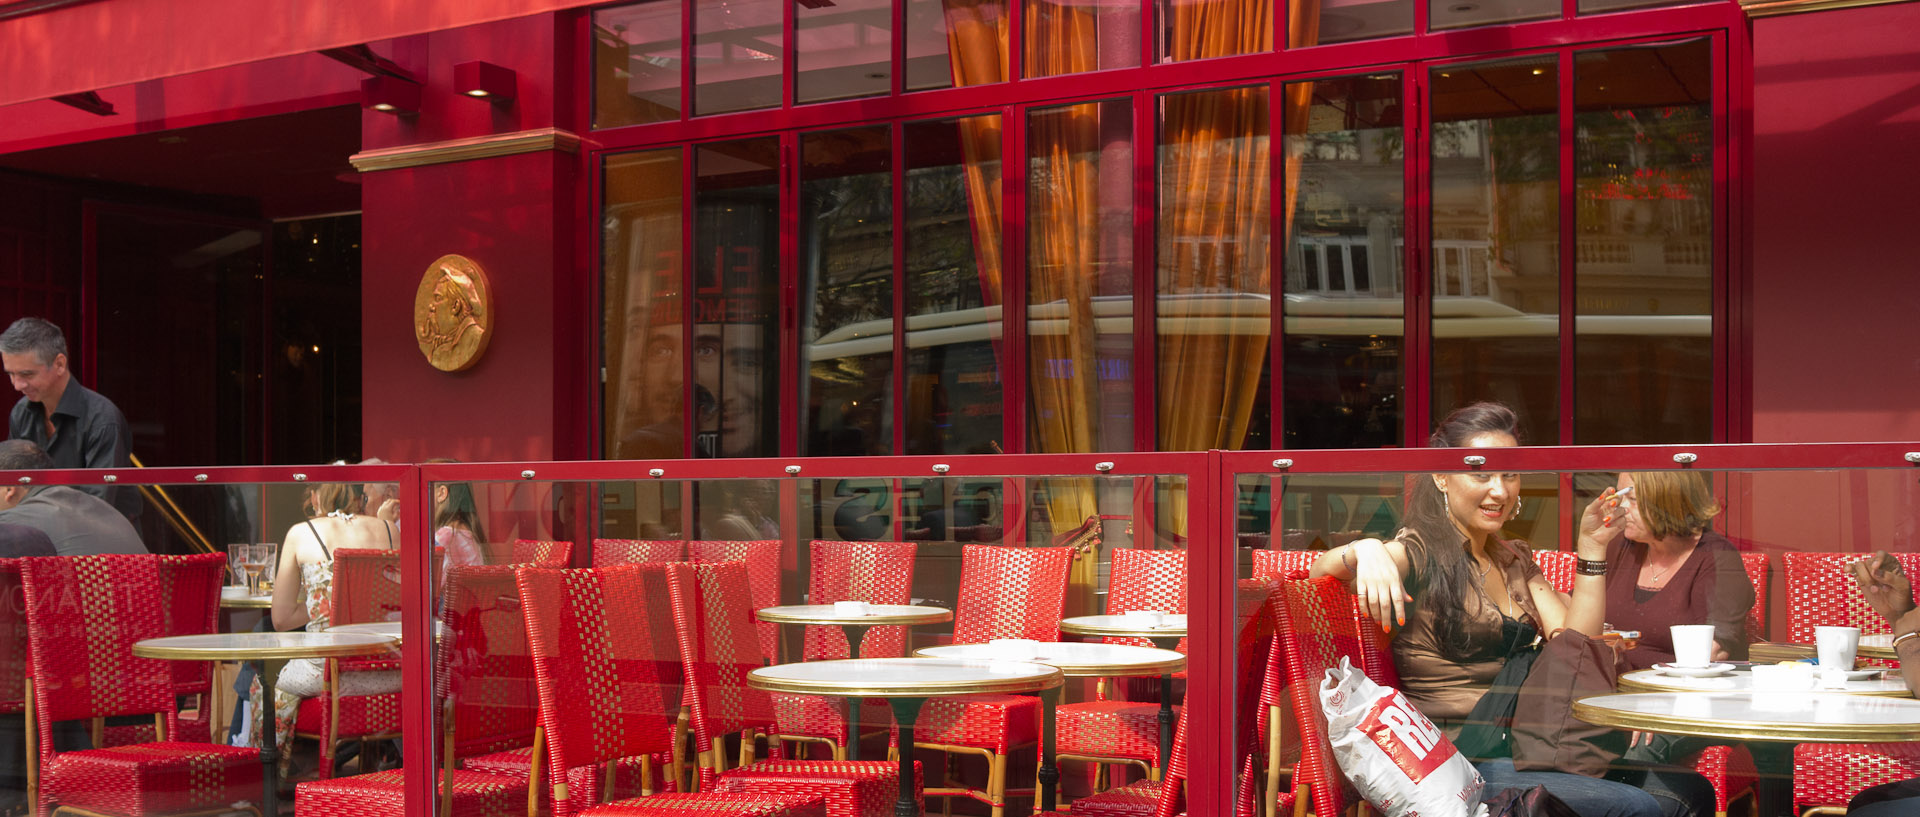 La terrasse du café Grévin, boulevard Montmartre, à Paris.